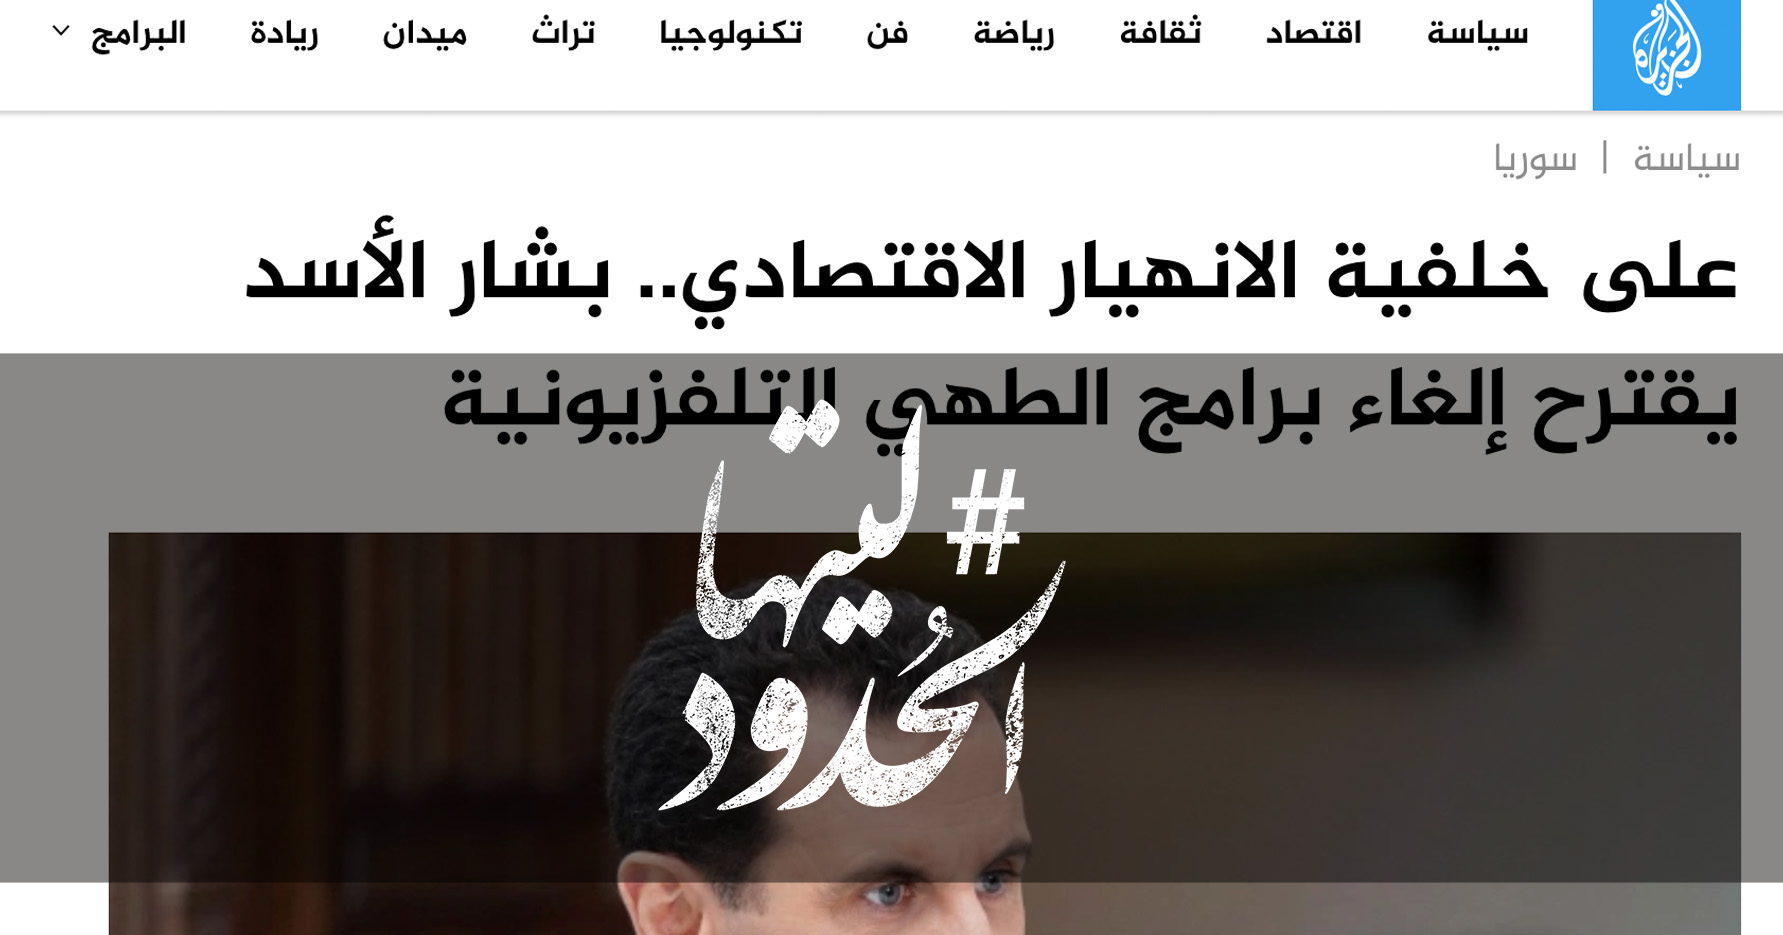 صورة على خلفية الانهيار الاقتصادي.. بشار الأسد يقترح إلغاء برامج الطهي التلفزيونية